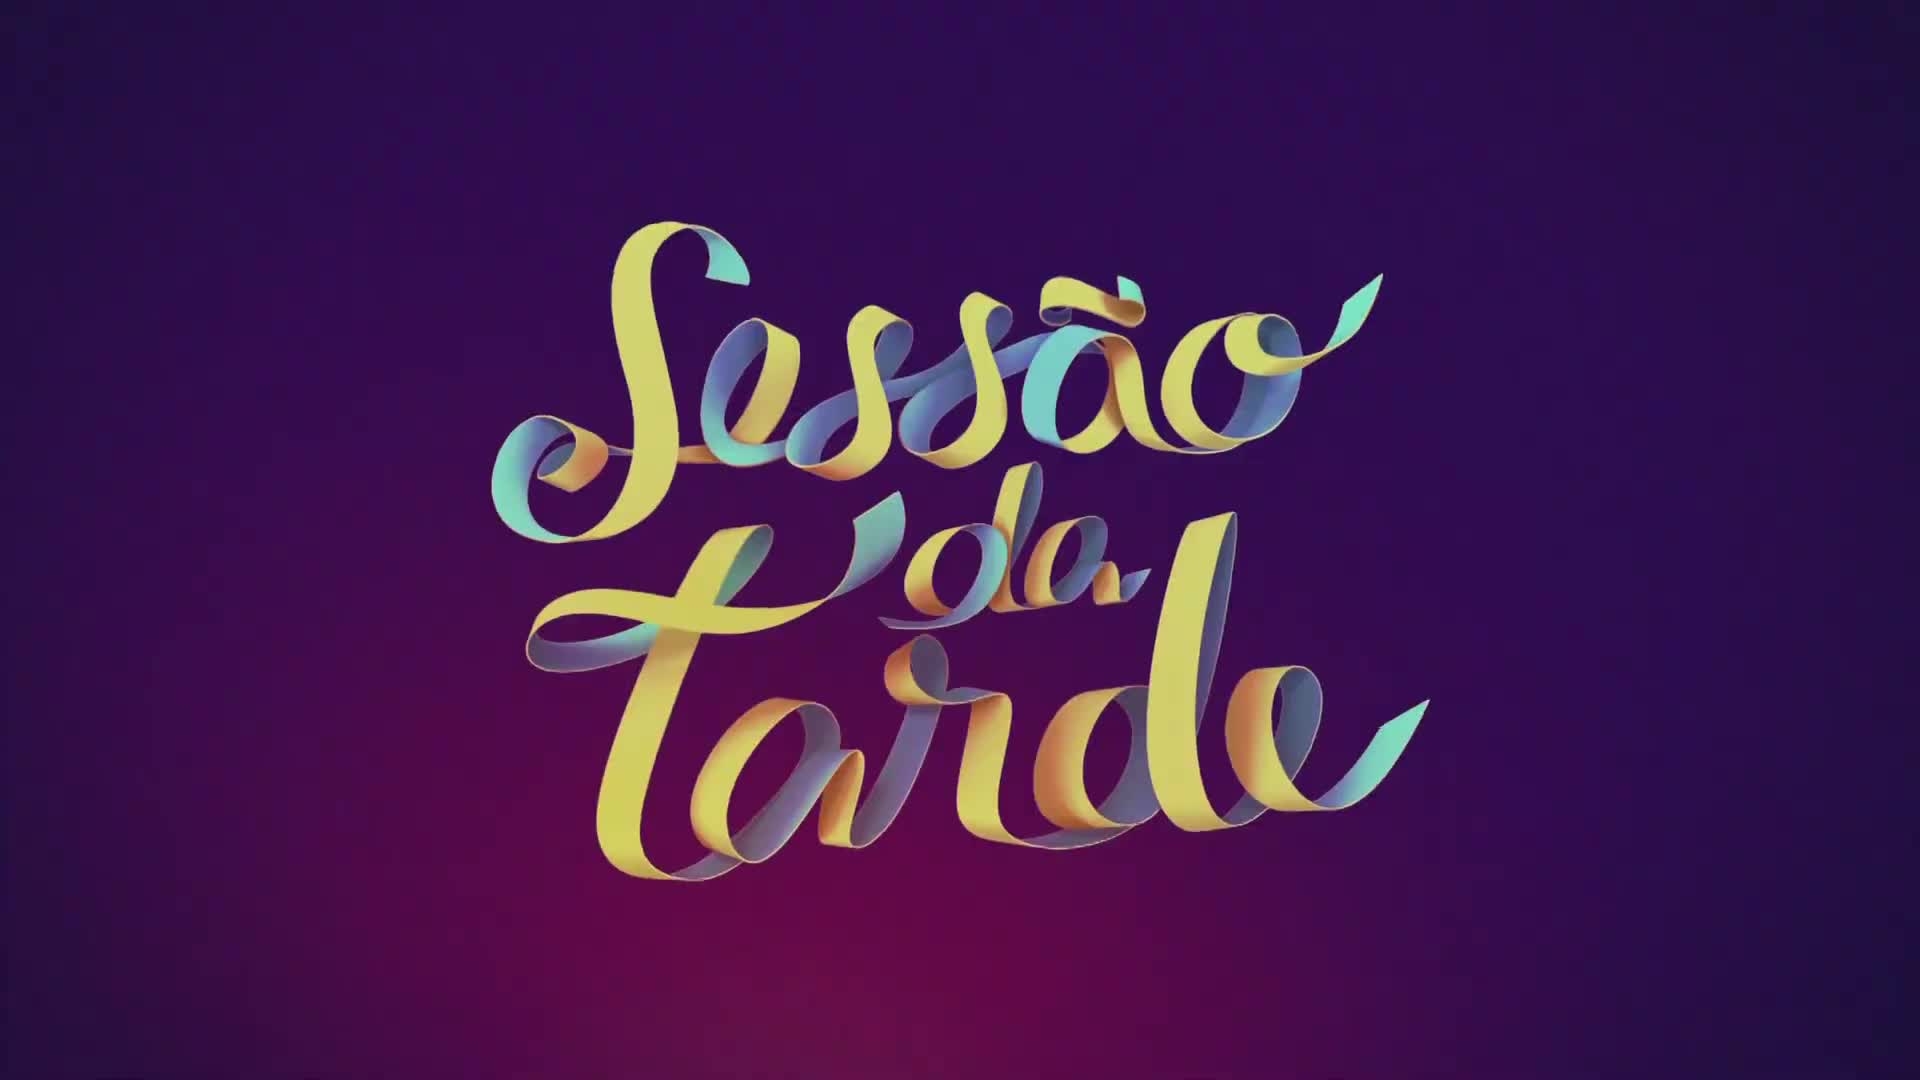 Rede Globo > filmes - Sessão da Tarde exibe o clássico 'Ghost - Do Outro  Lado da Vida